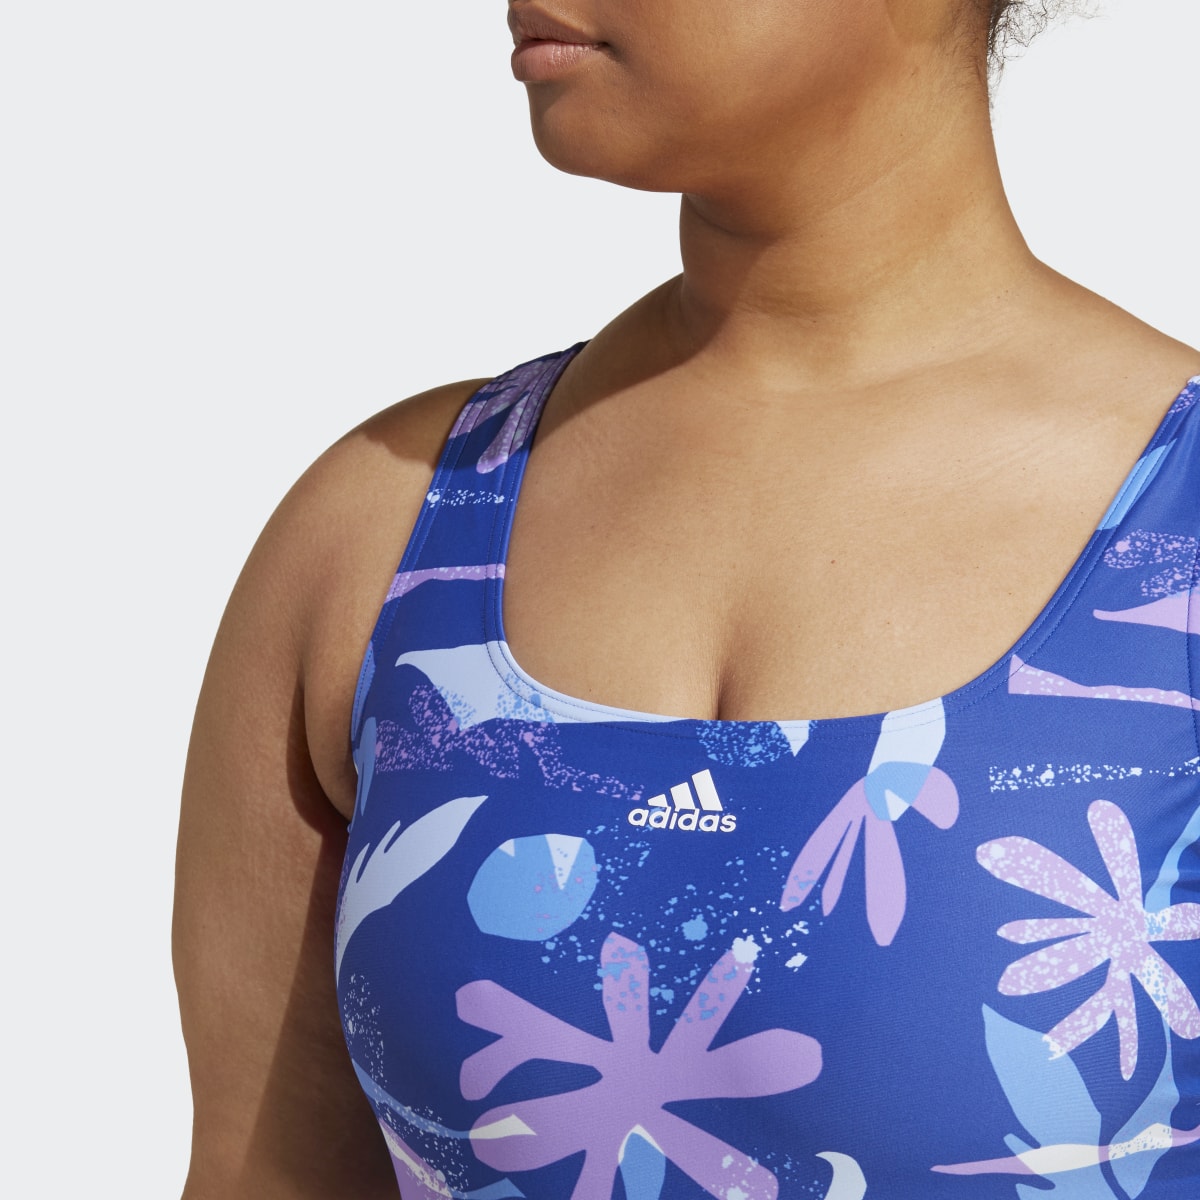 Adidas Floral 3-Stripes Swimsuit (Plus Size). 7